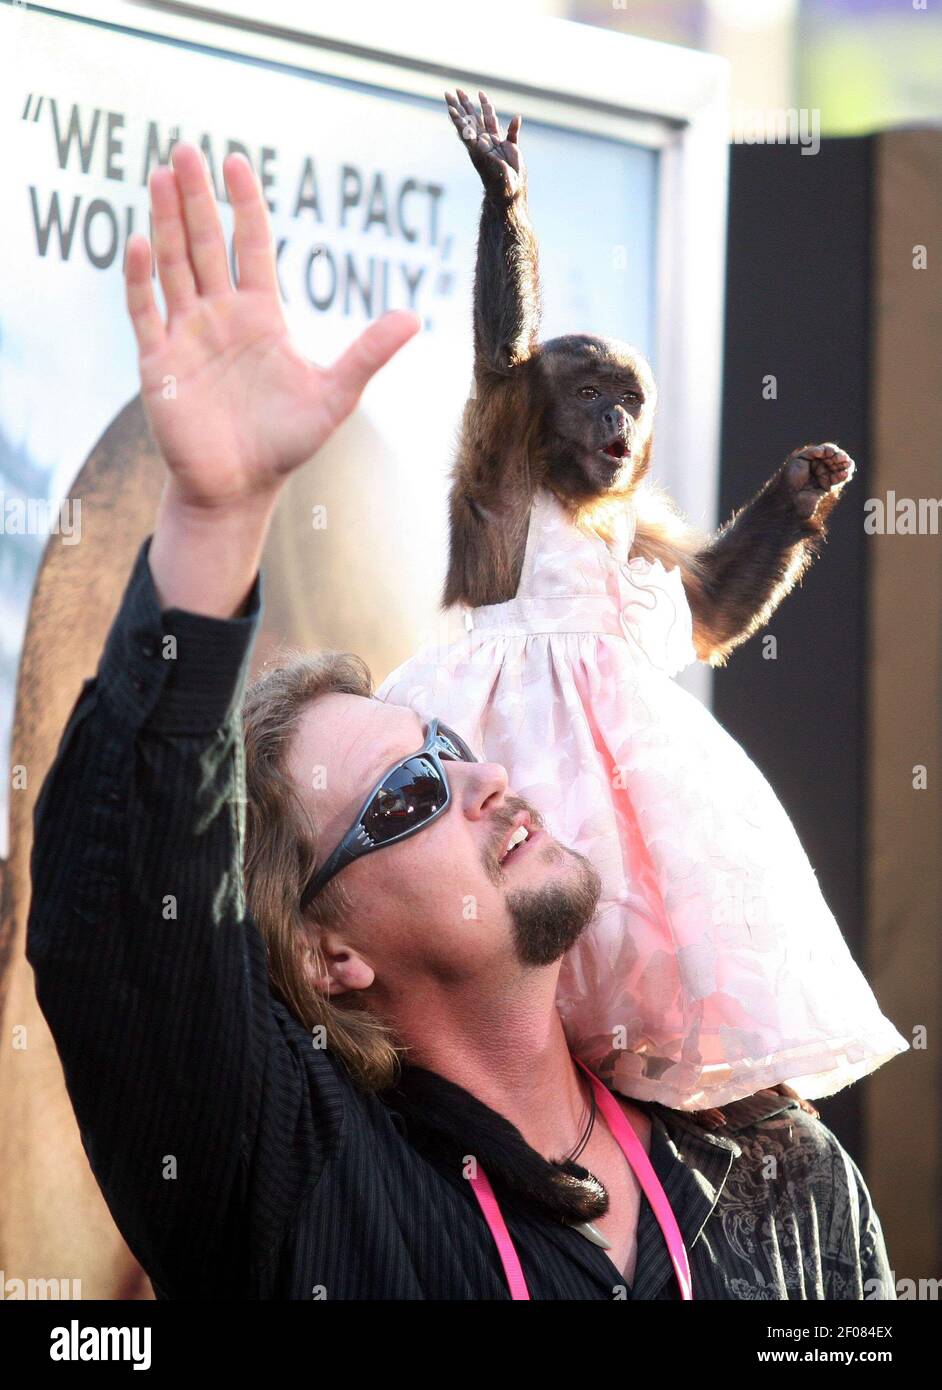 19 de mayo de 2011 - Hollywood, CA - el mono de la Hangover llega al  estreno de 'Hangover 2' en Hollywood, California. Crédito de la foto:  Krista Kennel/Sipa Press/hangovertwopremkk.009/1105200641 Fotografía de